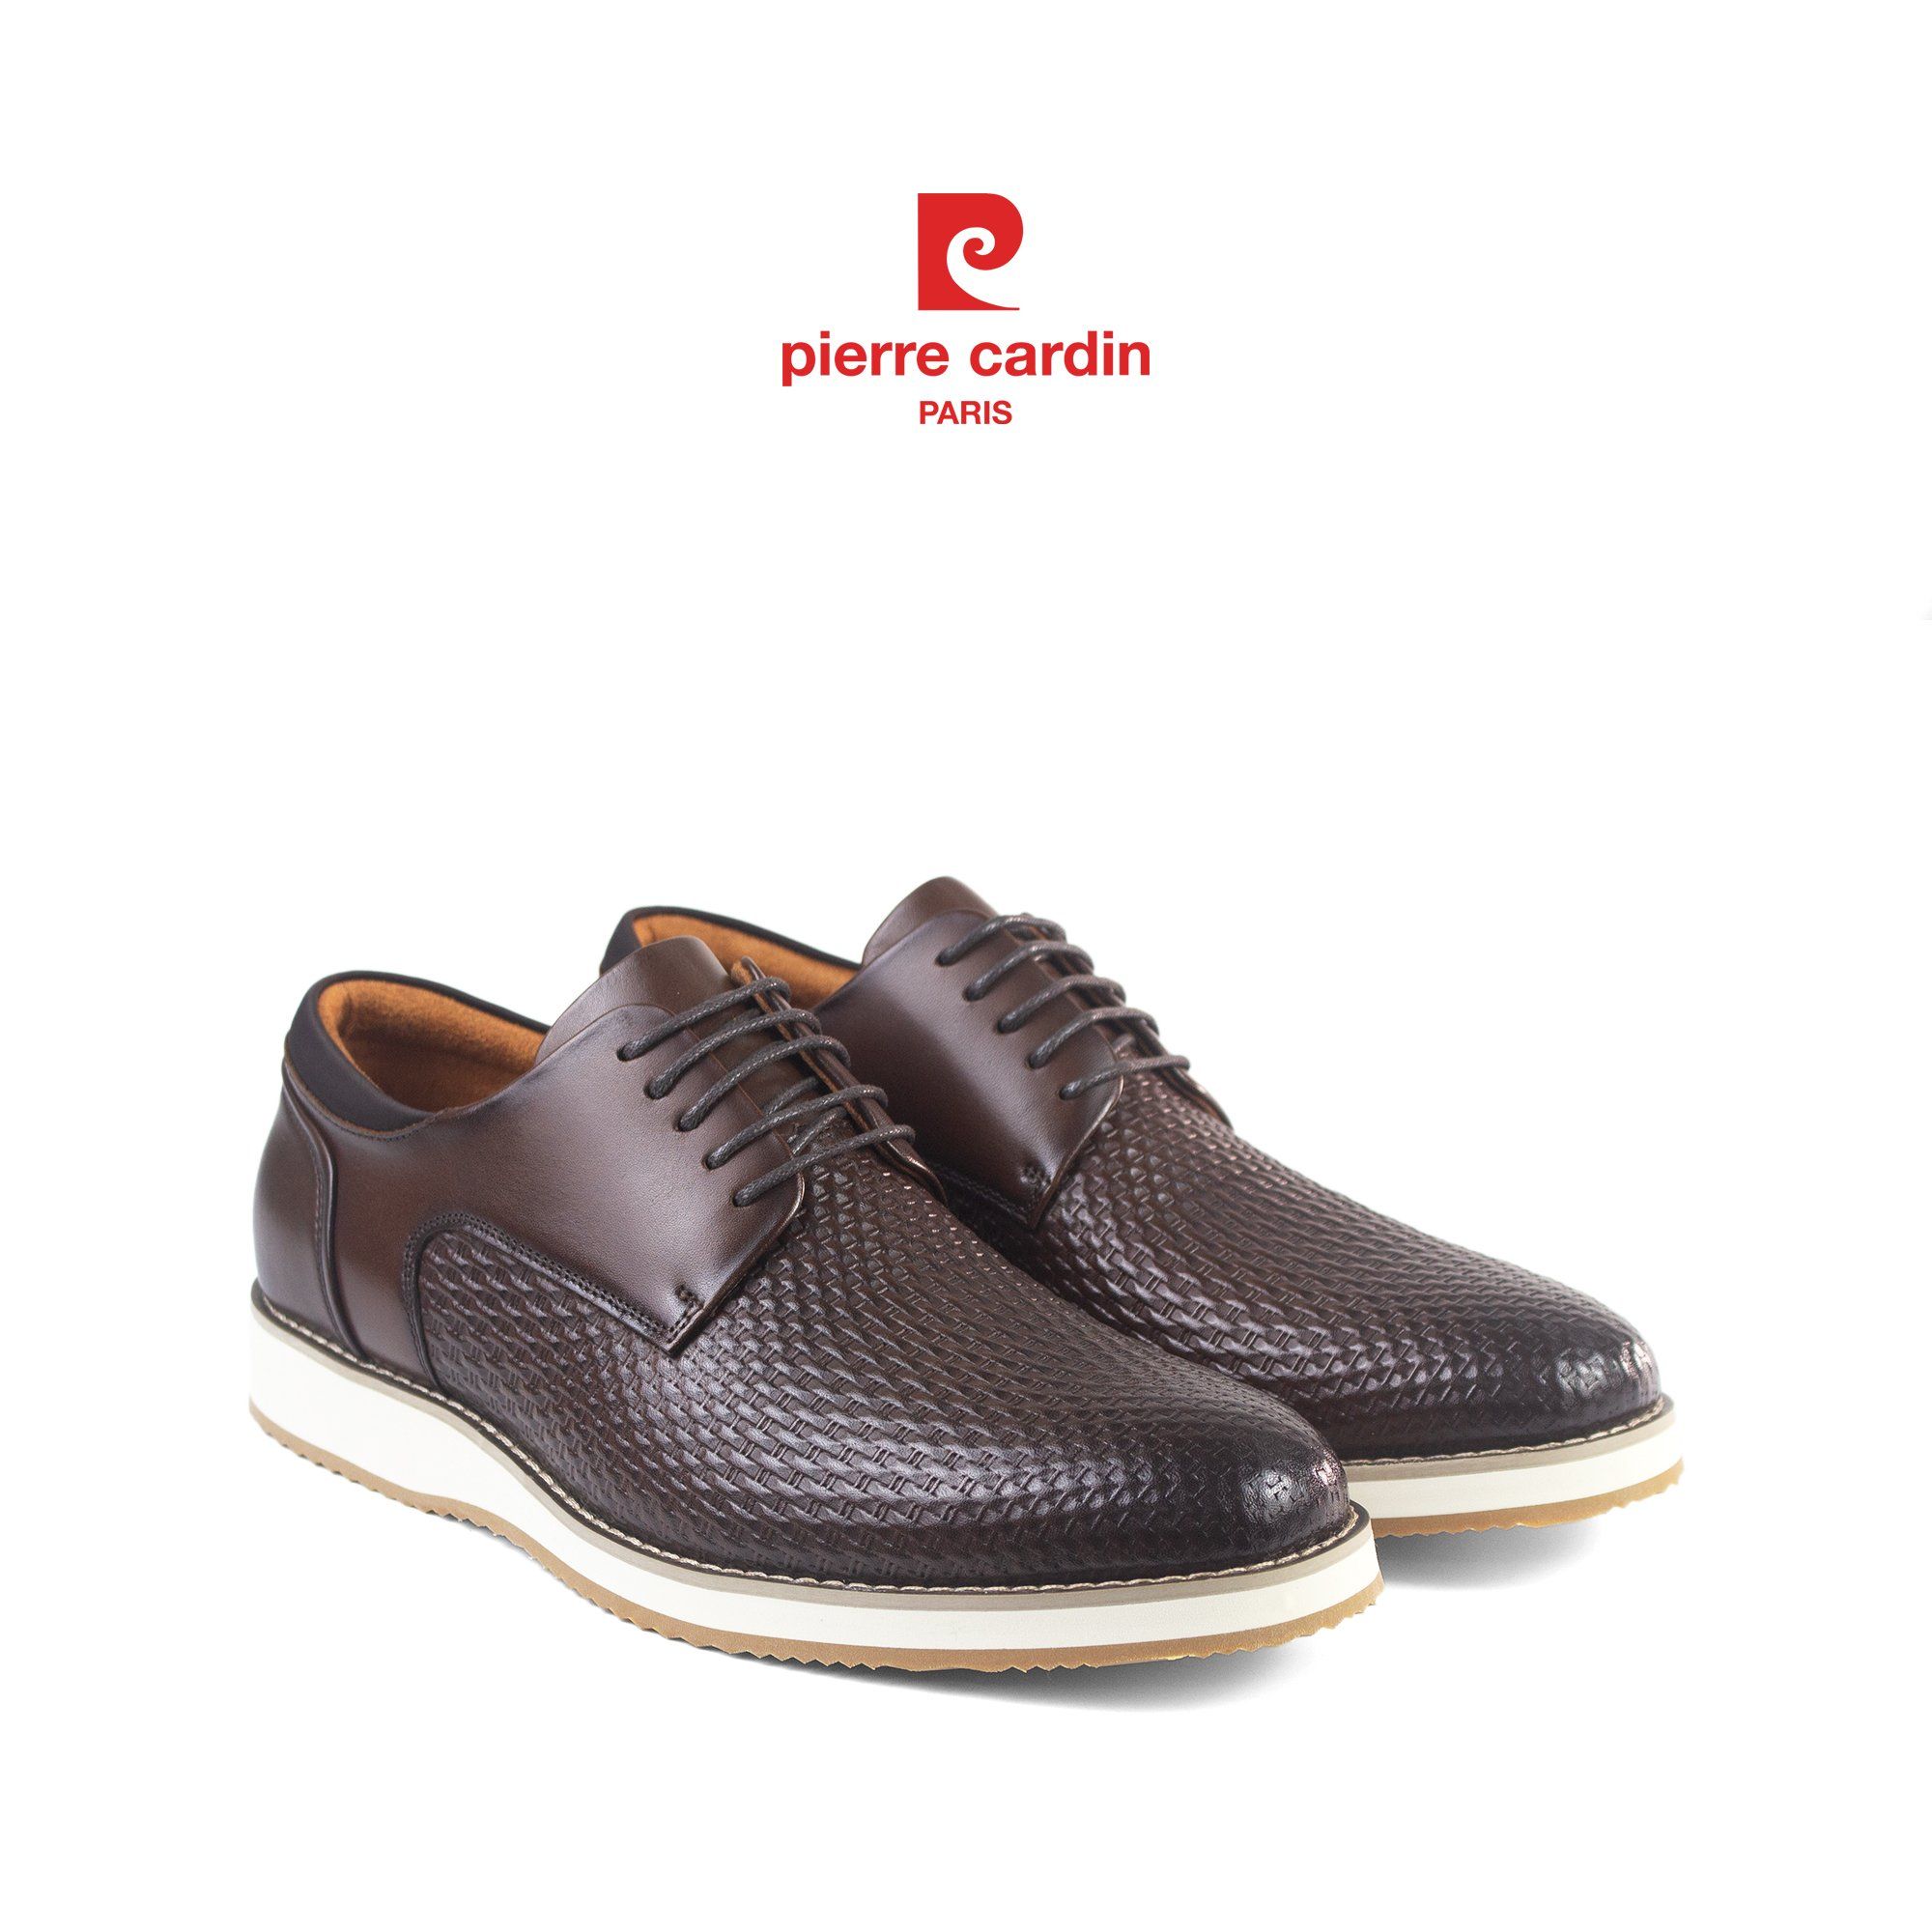 Hình 4 - Mẫu giày PCMFWLH 789 mang đến sự kết hợp hoàn hảo giữa phong cách cá nhân và sự thoải mái